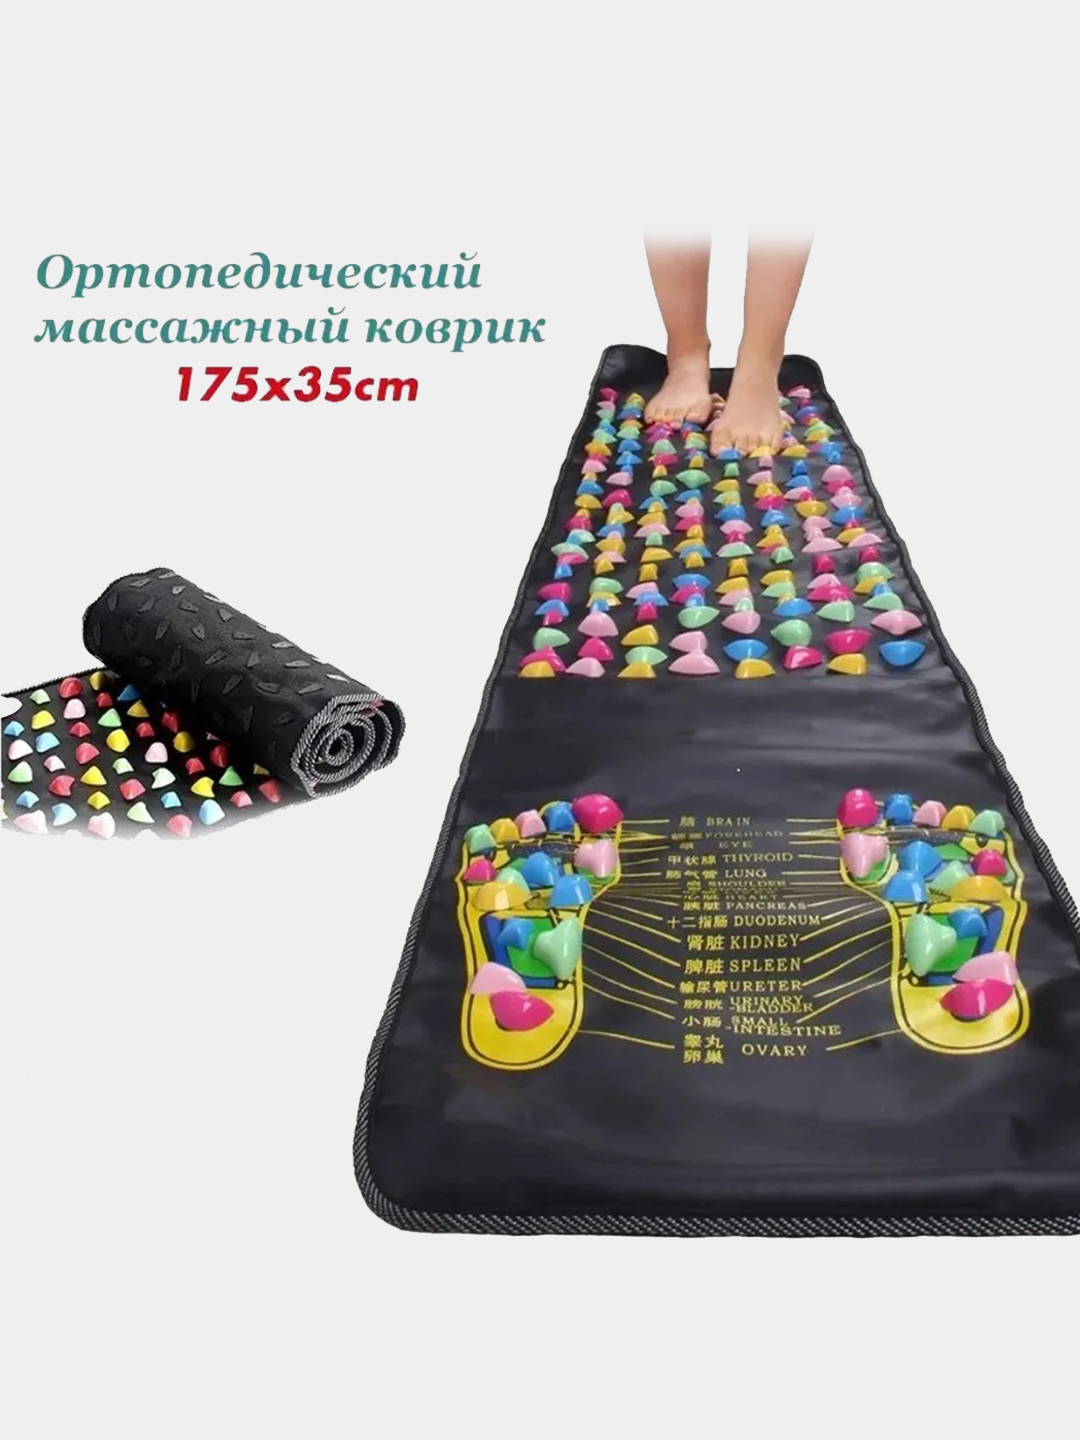 Рефлекторный массажный коврик Foot Massage Mat, массажный коврик .